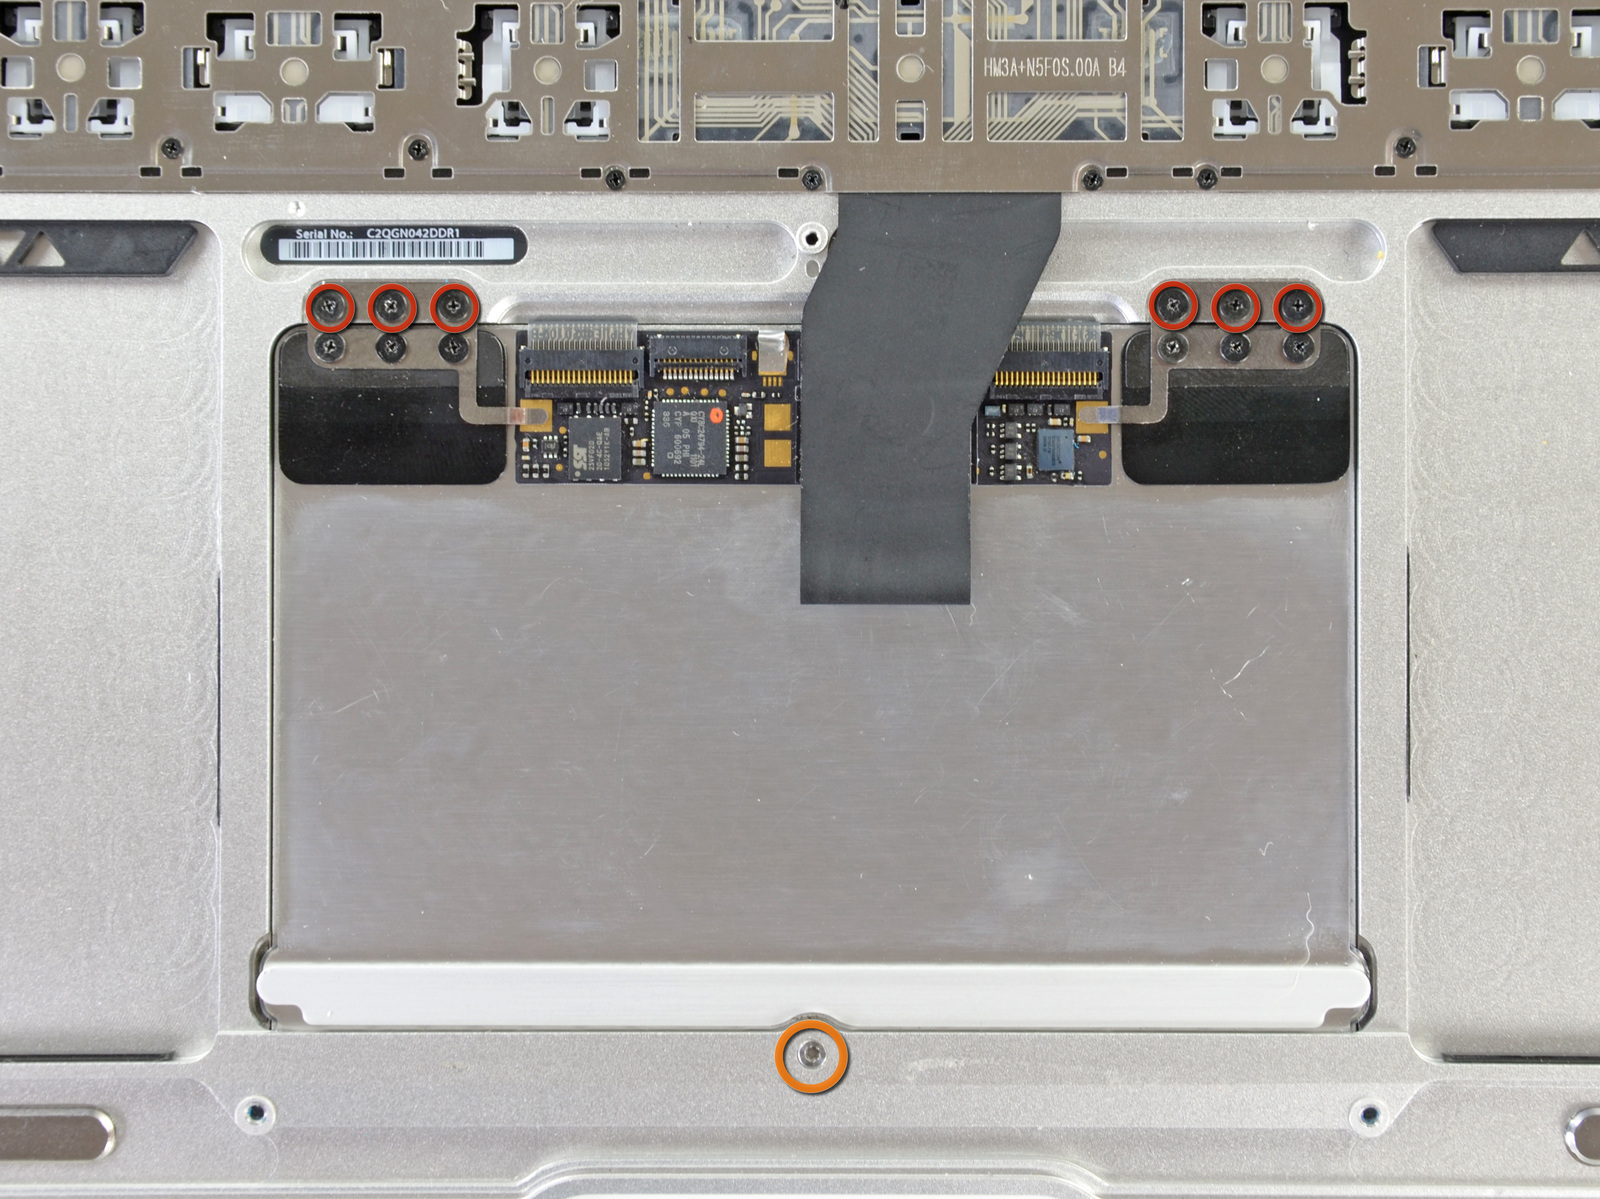 MacBook Air 13 "Mid 2011 Büyük Harf Değiştirme Adım 40 dikkatle tek elle klavye şerit kablo kaldırırken, klavye şerit kablo ZIF soketinin üzerindeki tutucu kapağını çevirmek için bir spudger veya